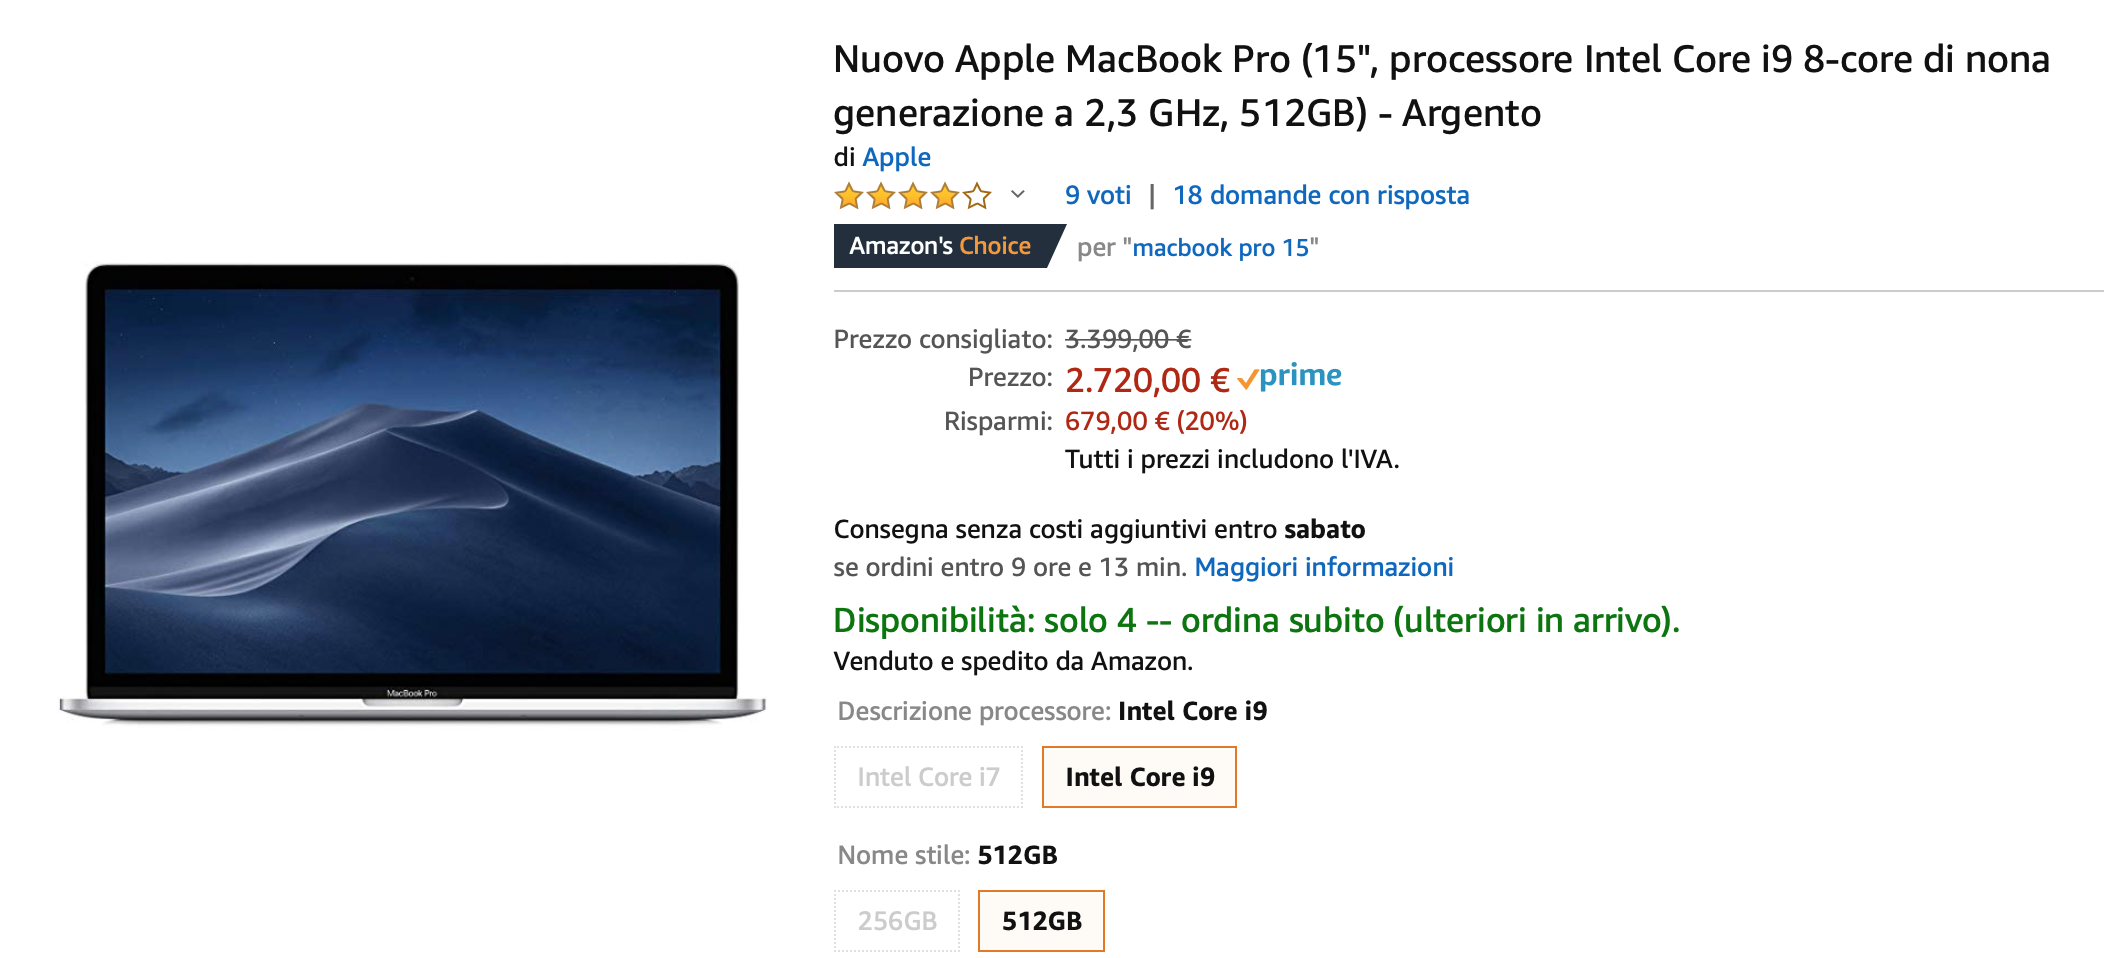 MacBook Pro 15″ 2.3 GHz scontato del 20% su Amazon